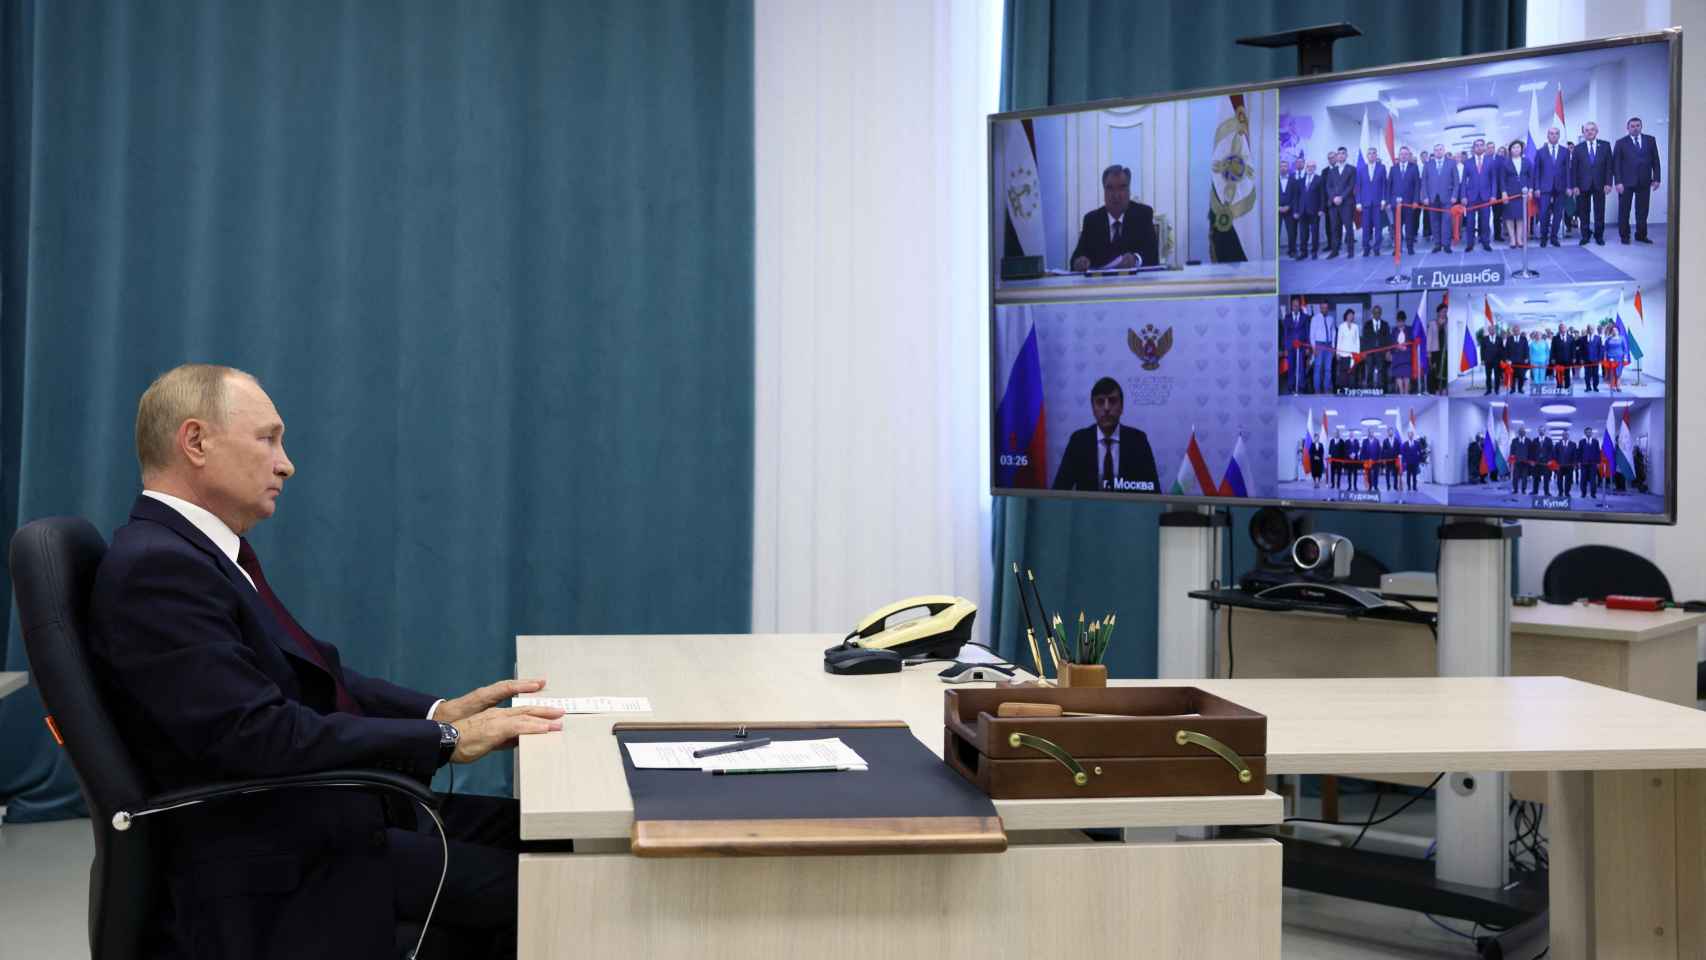 El presidente ruso Vladimir Putin participa en una ceremonia a través de un enlace de video .